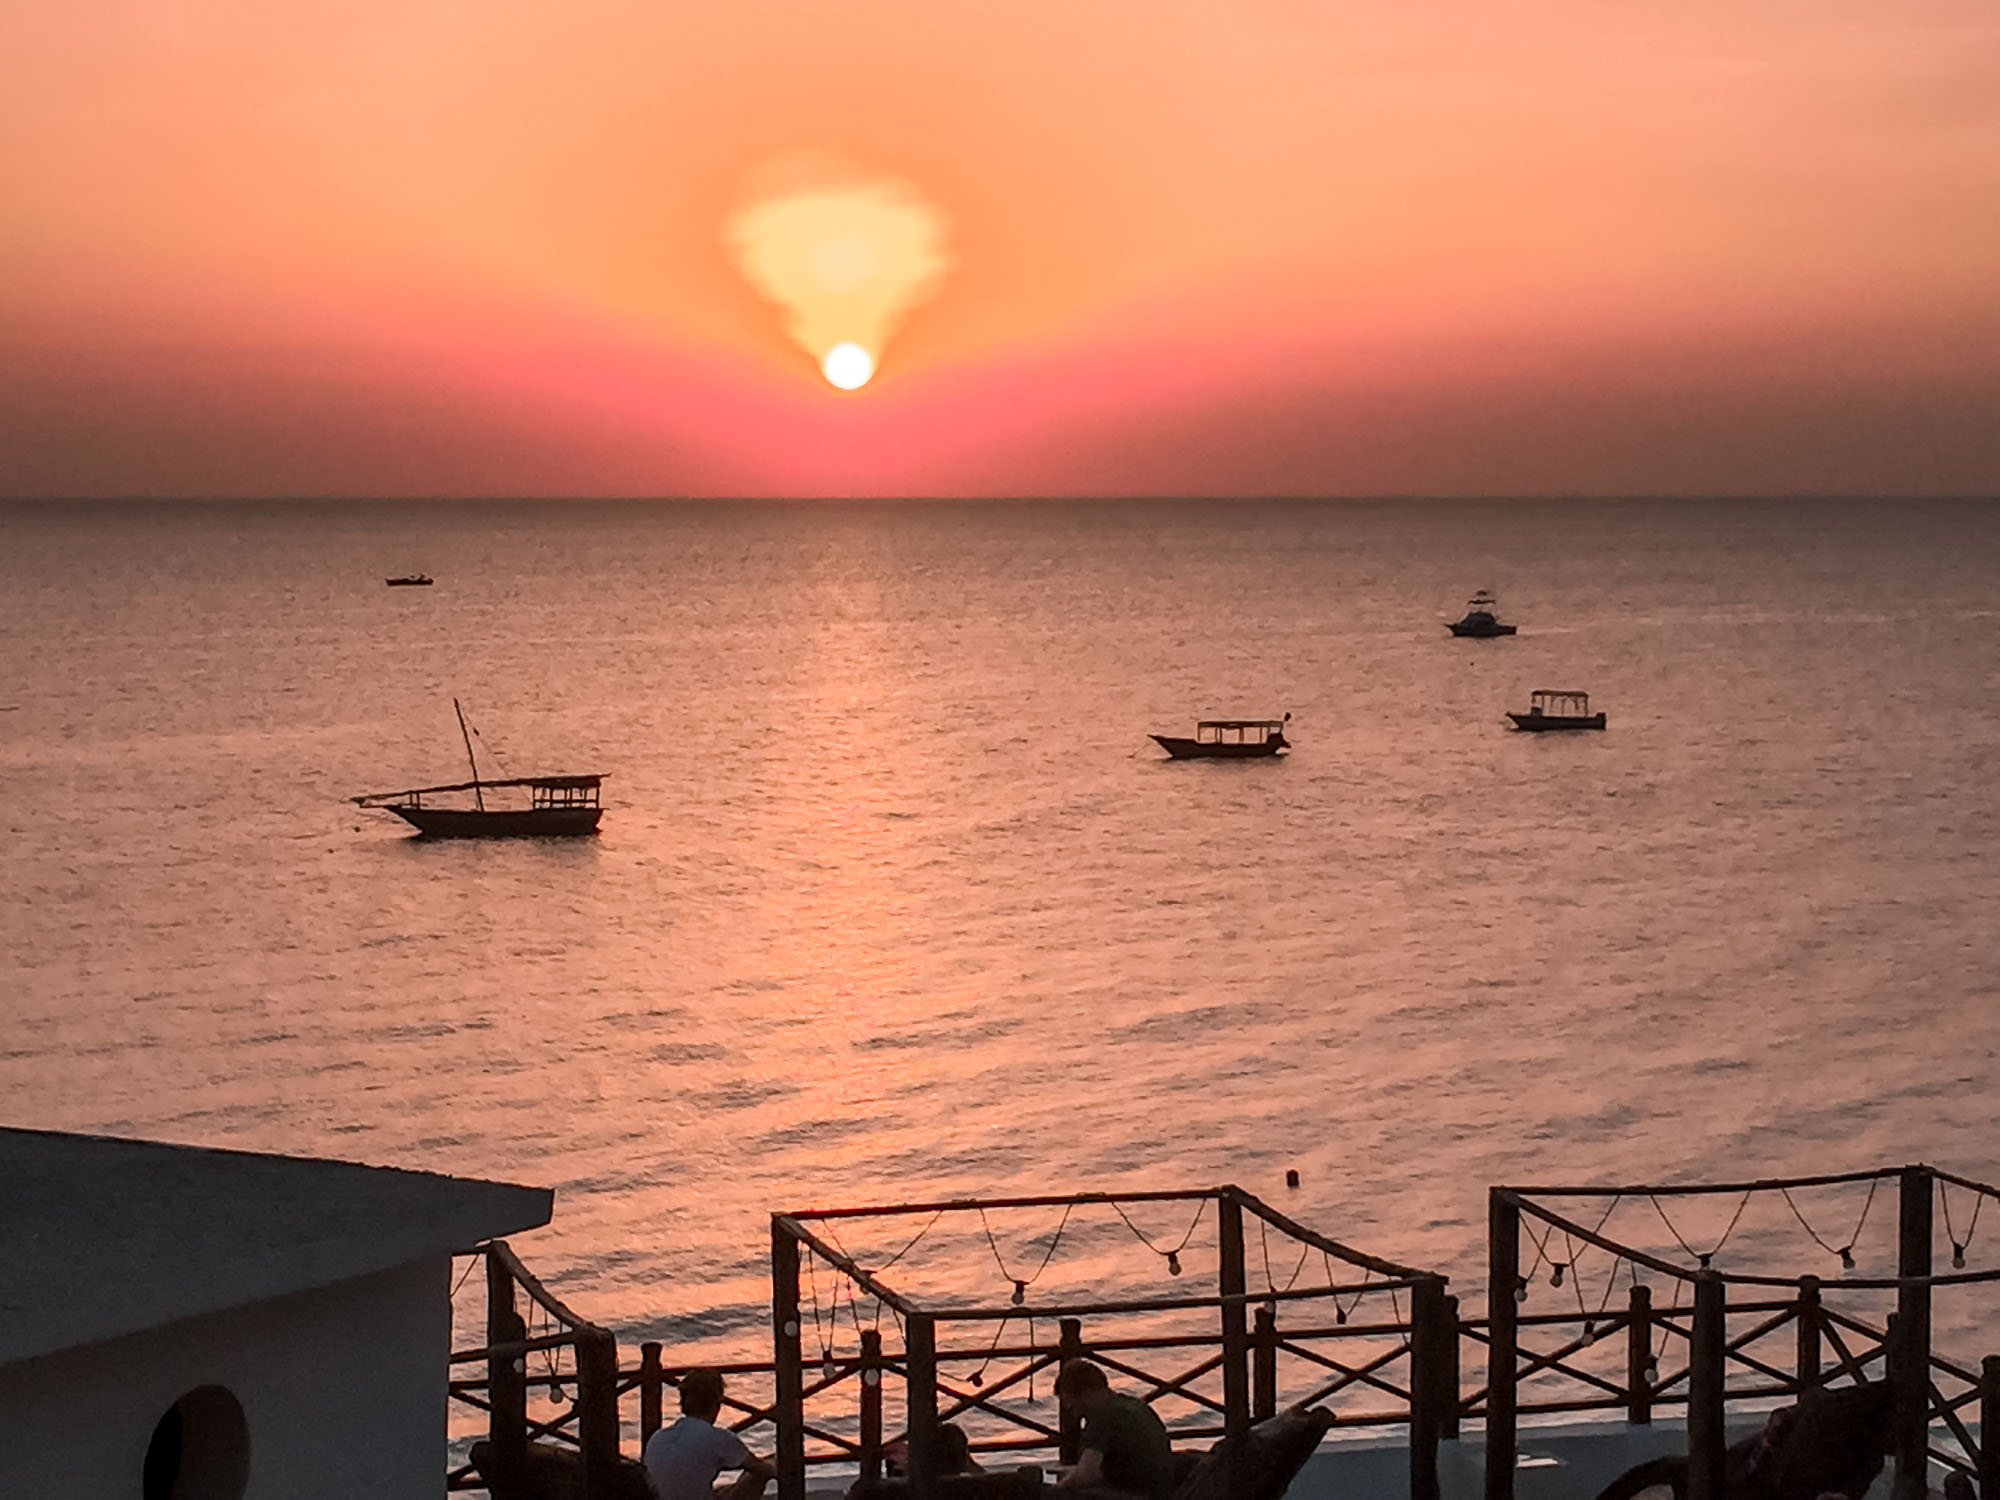 Zanzibar Reise planen - Einreise, Anreise Rundreise planen